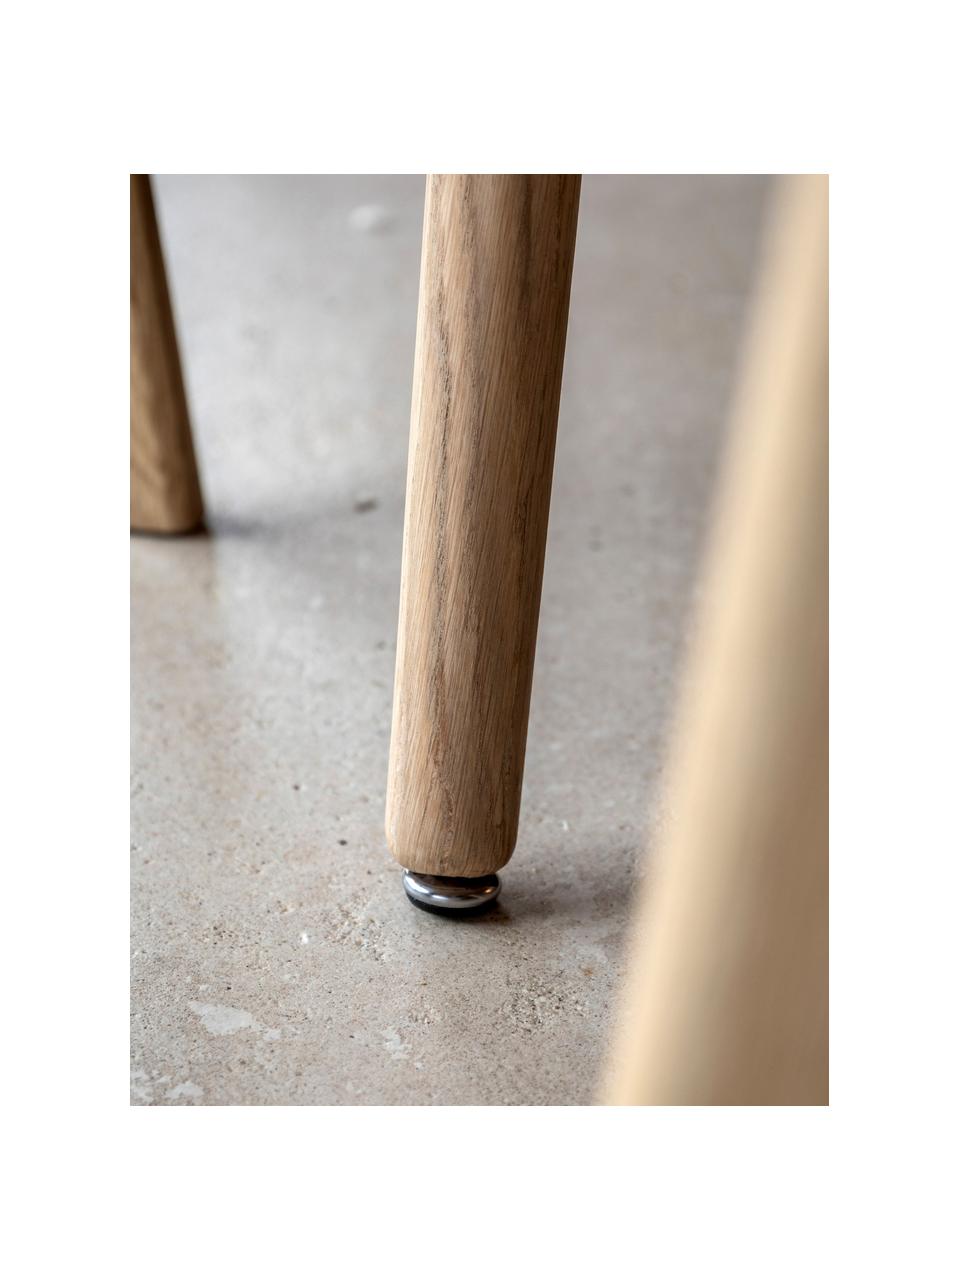 Okrągły stół do jadalni z drewna Hatfield, Ø 110 cm, Blat: drewno kauczukowe z forni, Nogi: płyta pilśniowa średniej , Drewno dębowe, Ø 110 cm